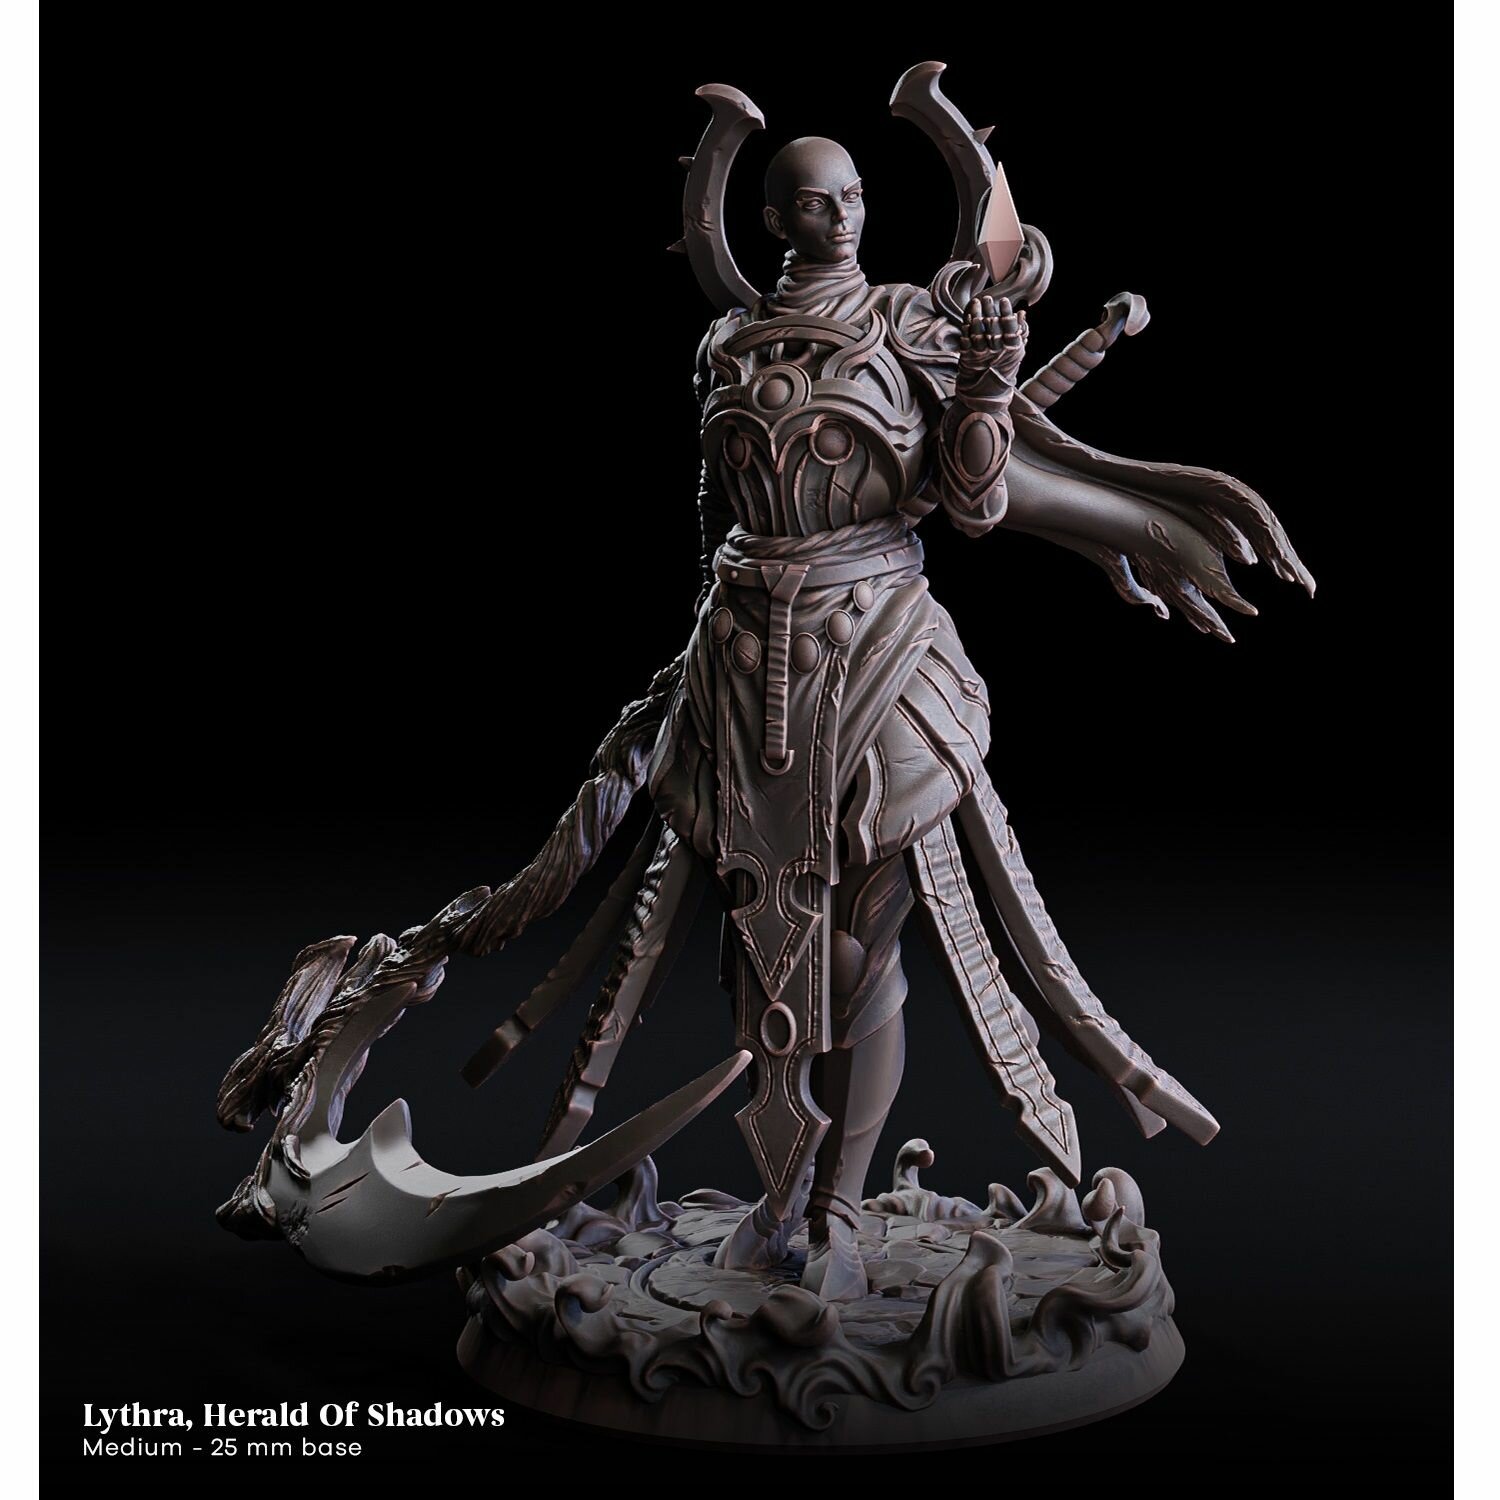 Fantasy миниатюра Воительница маг (рыцарь с косой) игровая фигурка для раскрашивания (масштаб 32мм) база 25мм